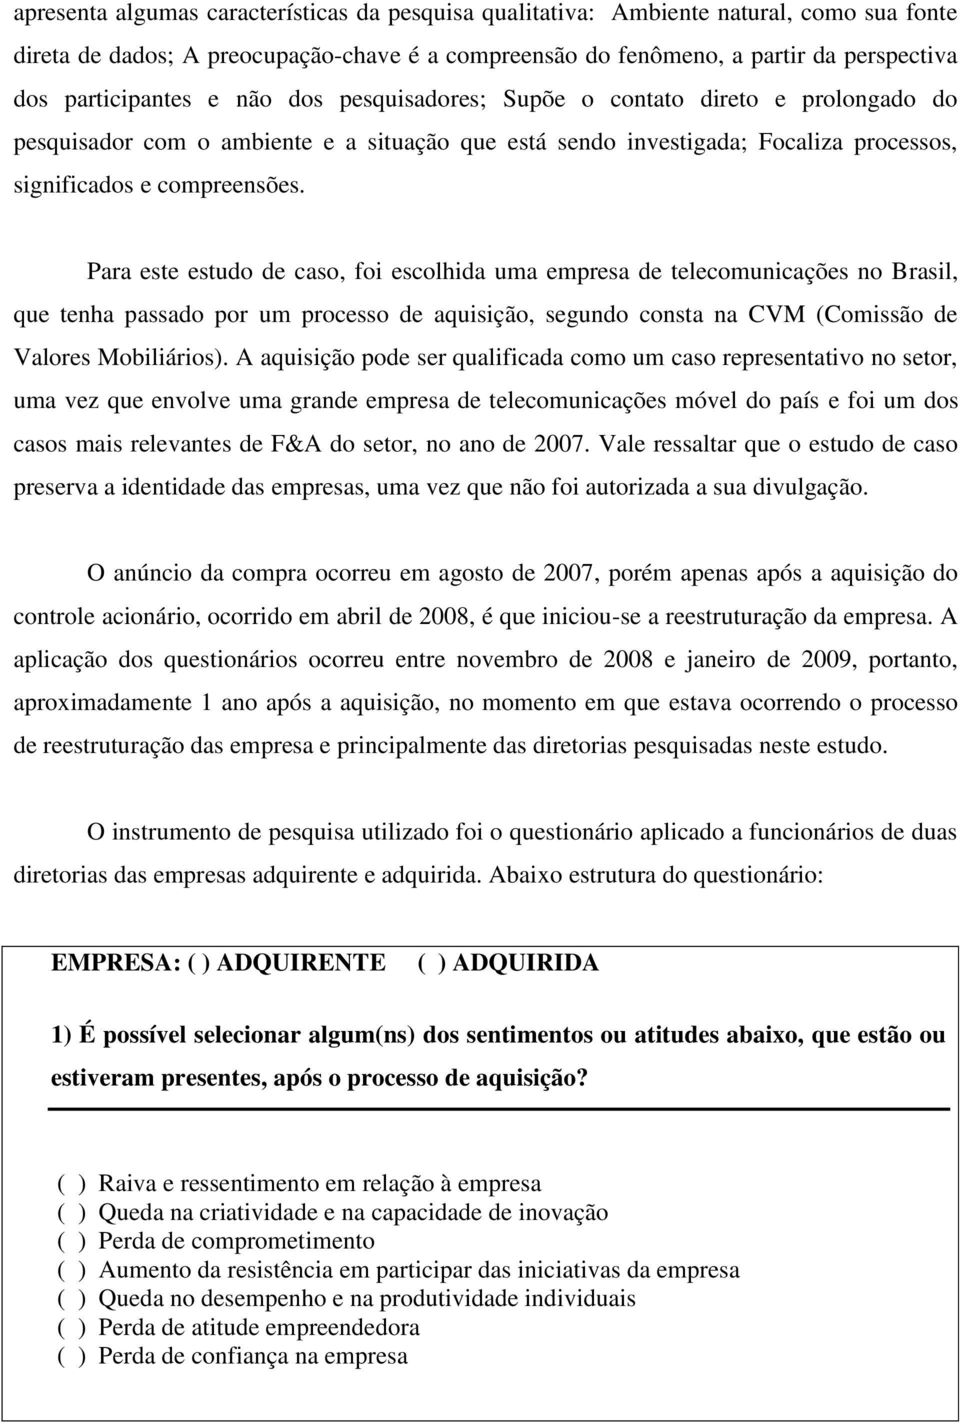 Para este estudo de caso, foi escolhida uma empresa de telecomunicações no Brasil, que tenha passado por um processo de aquisição, segundo consta na CVM (Comissão de Valores Mobiliários).